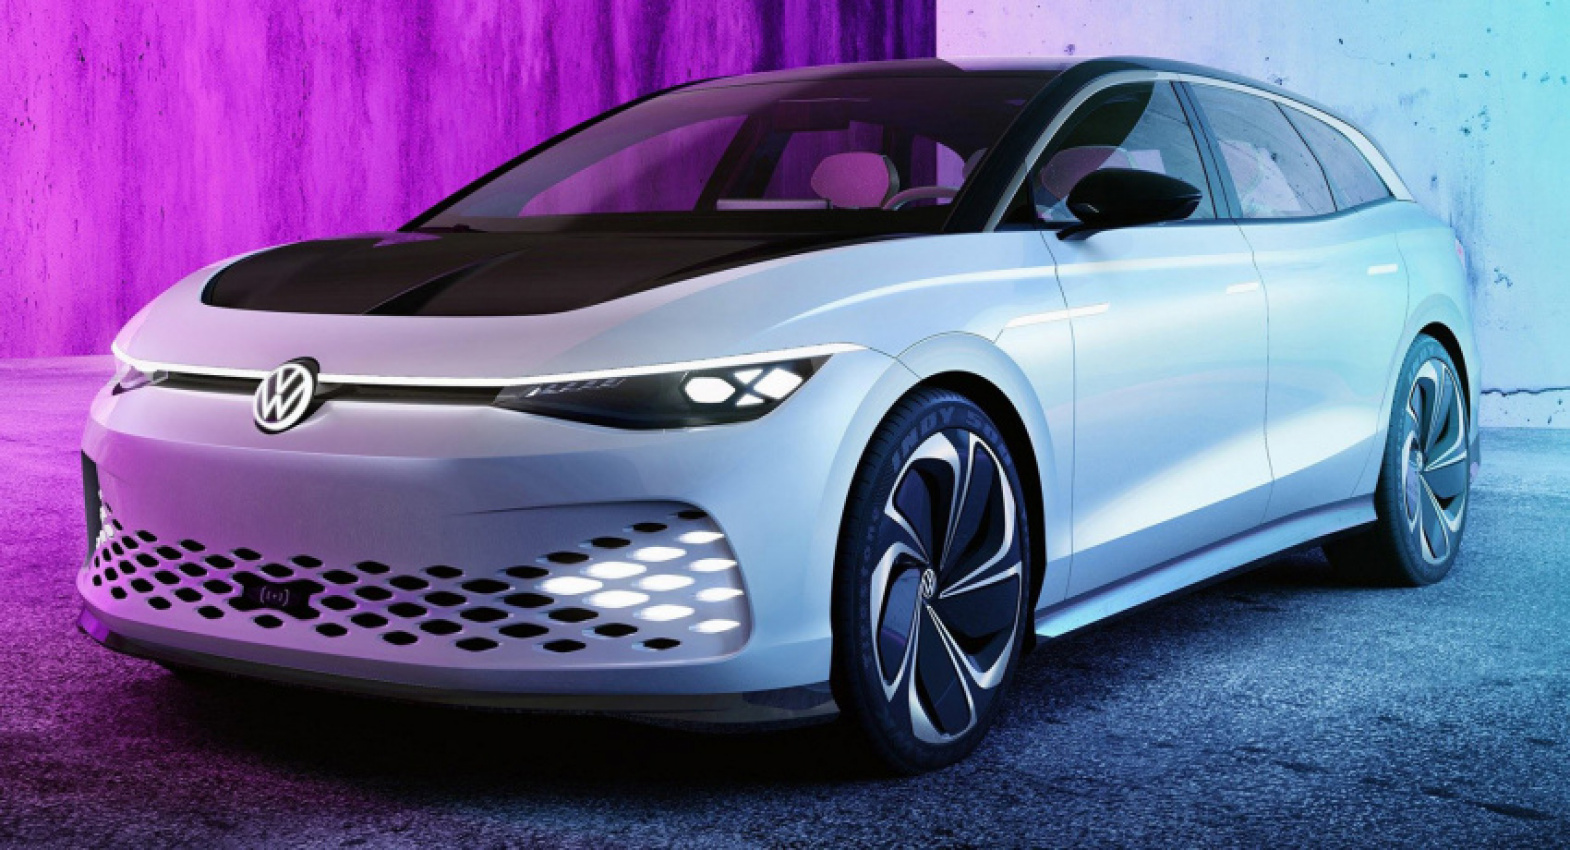 autos, cars, huawei, news, autonomous, reports, tech, vw group might purchase huawei’s autonomous vehicle unit